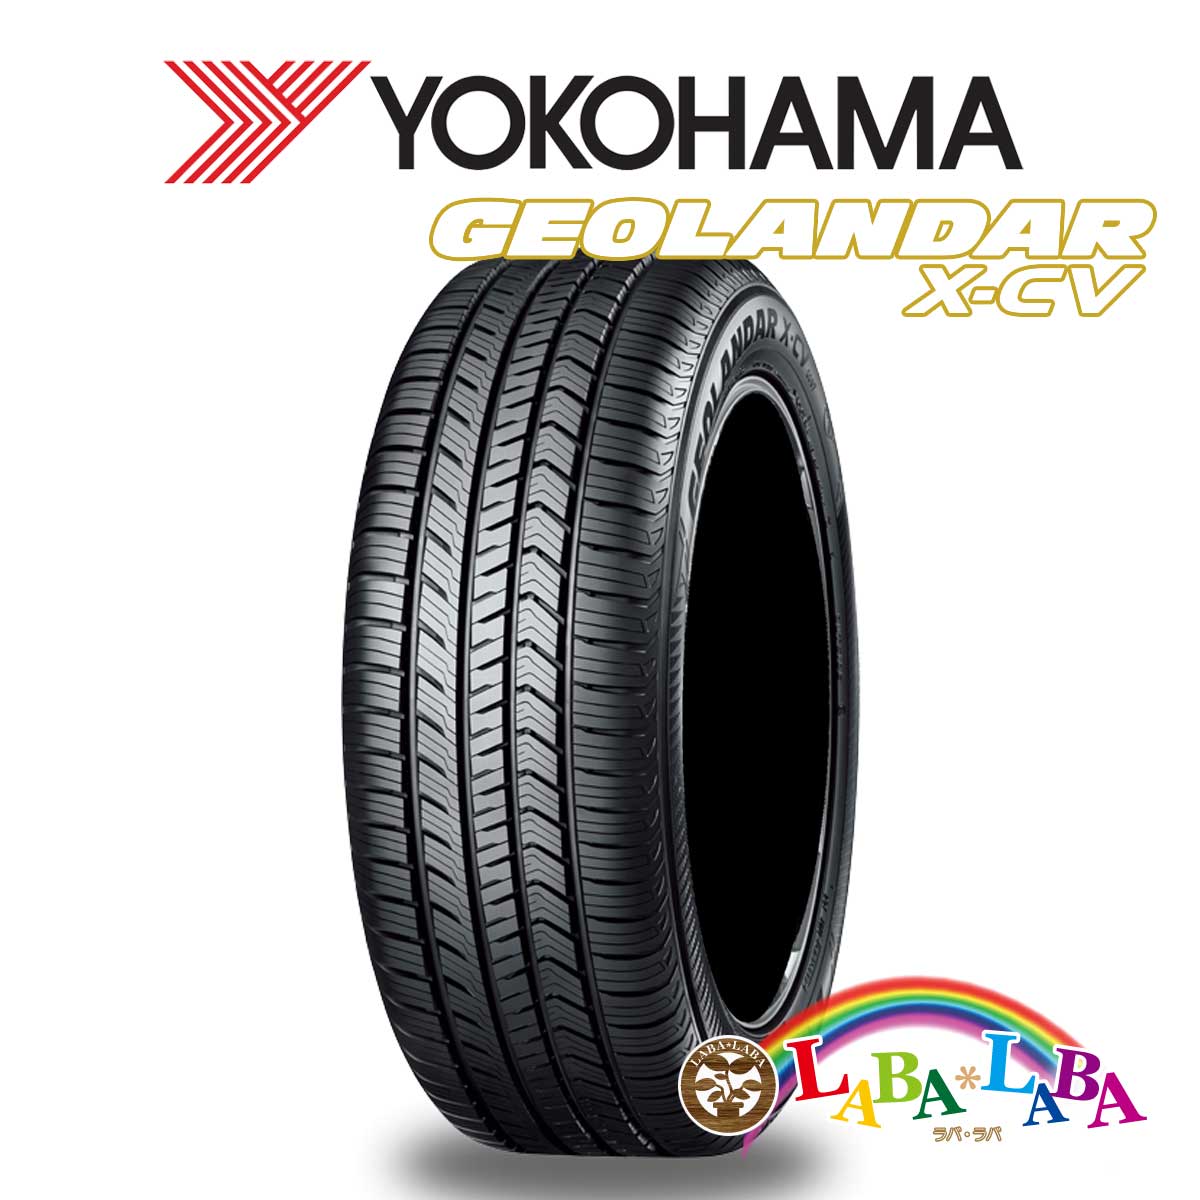 送料無料 国産タイヤ サマータイヤ 新品 タイヤのみ 2本SET 無料サンプルOK YOKOHAMA ヨコハマ GEOLANDAR X-CV 大きな割引 2本セット ジオランダー 45R20 G057 108W SUV 4WD 265 XL